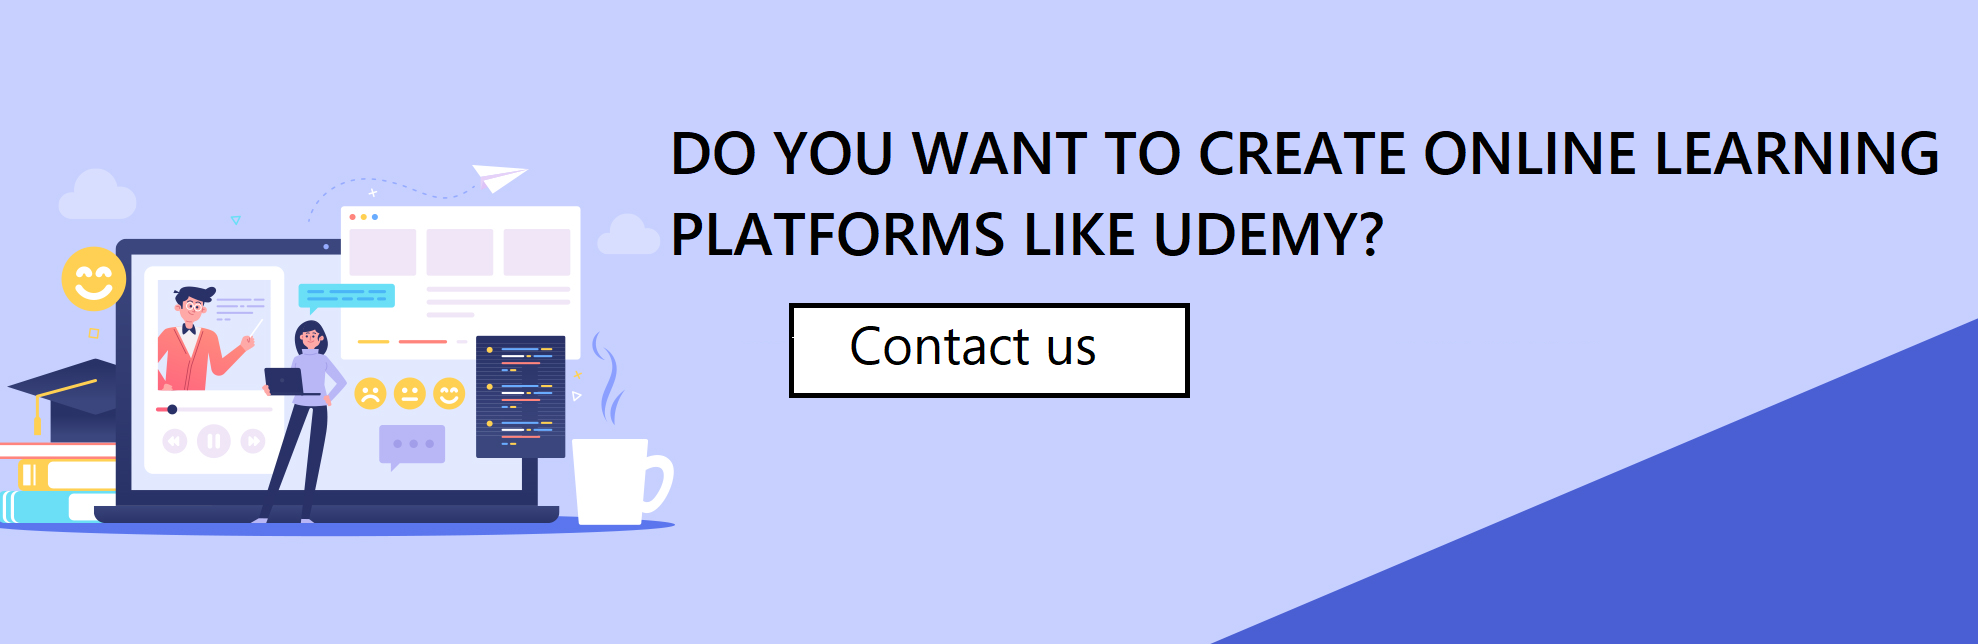 Online Learning Platforms Like Udemy